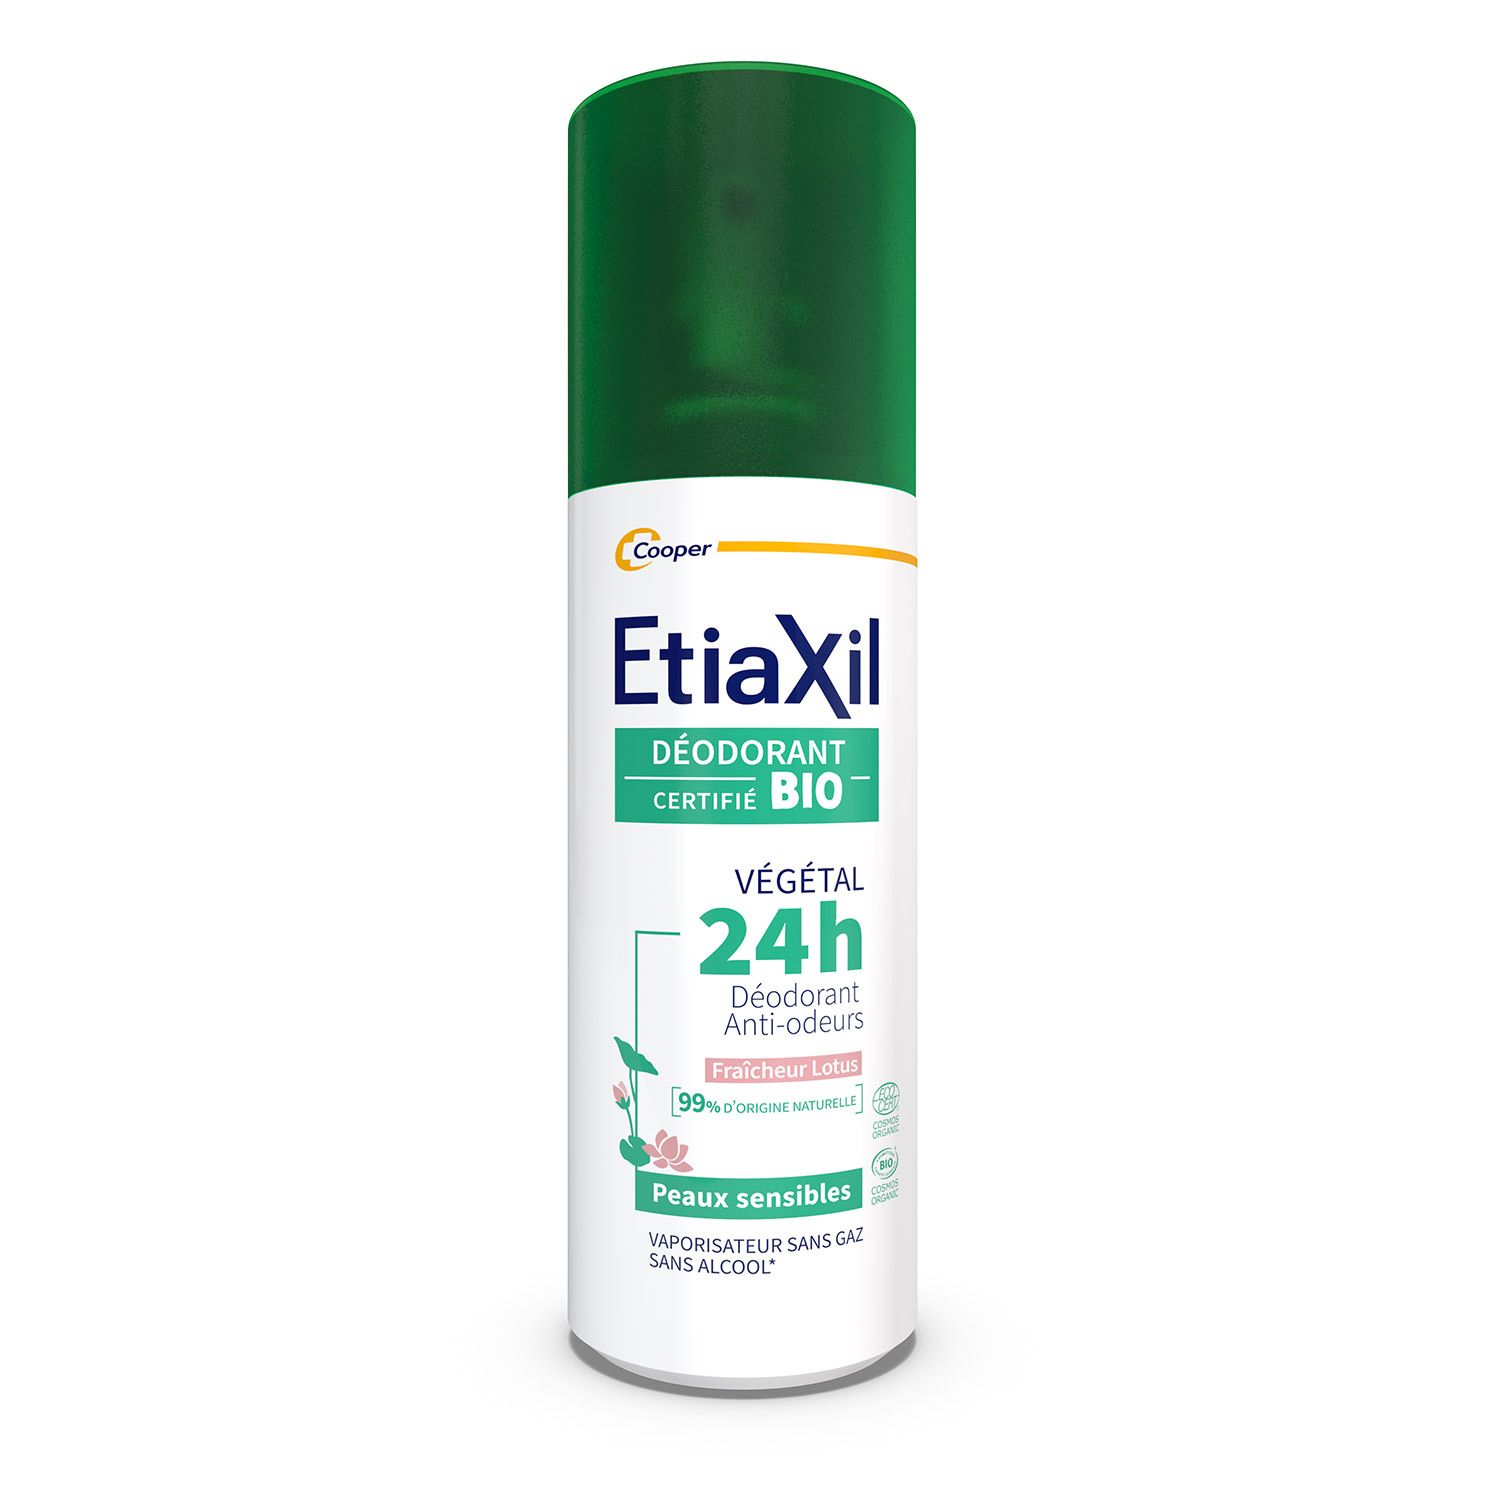 Etiaxil - Déodorant Végétal - Certifié BIO Parfum Lotus 24H - Aisselles - Adapté aux peaux sensibles - Spray - 100 ml